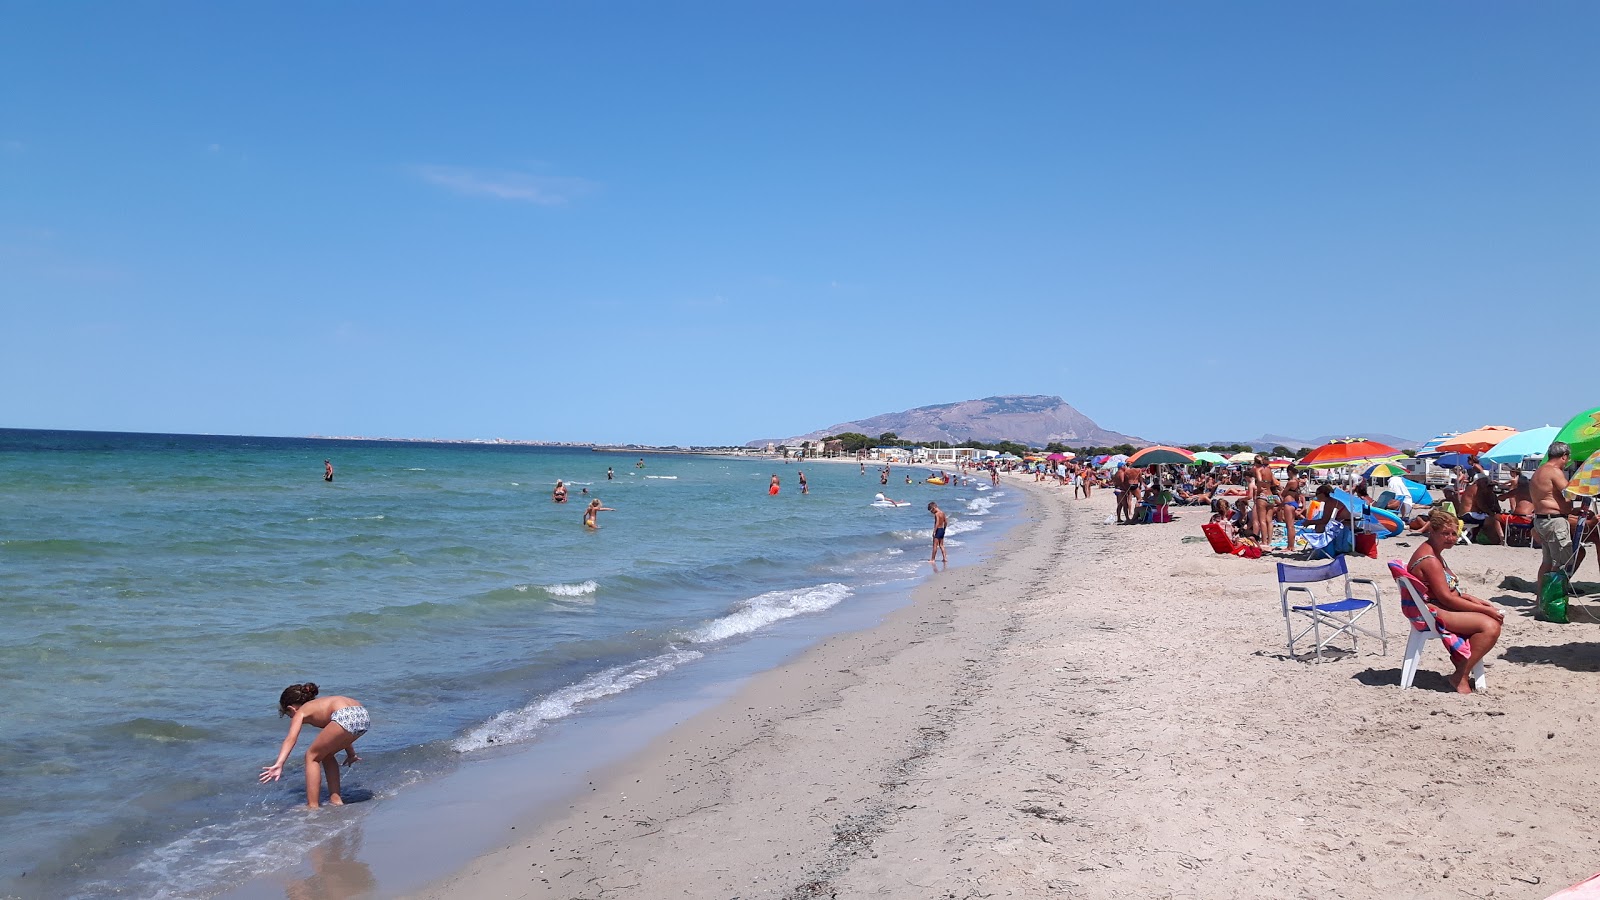 Foto av Spiaggia Marausa med lång rak strand